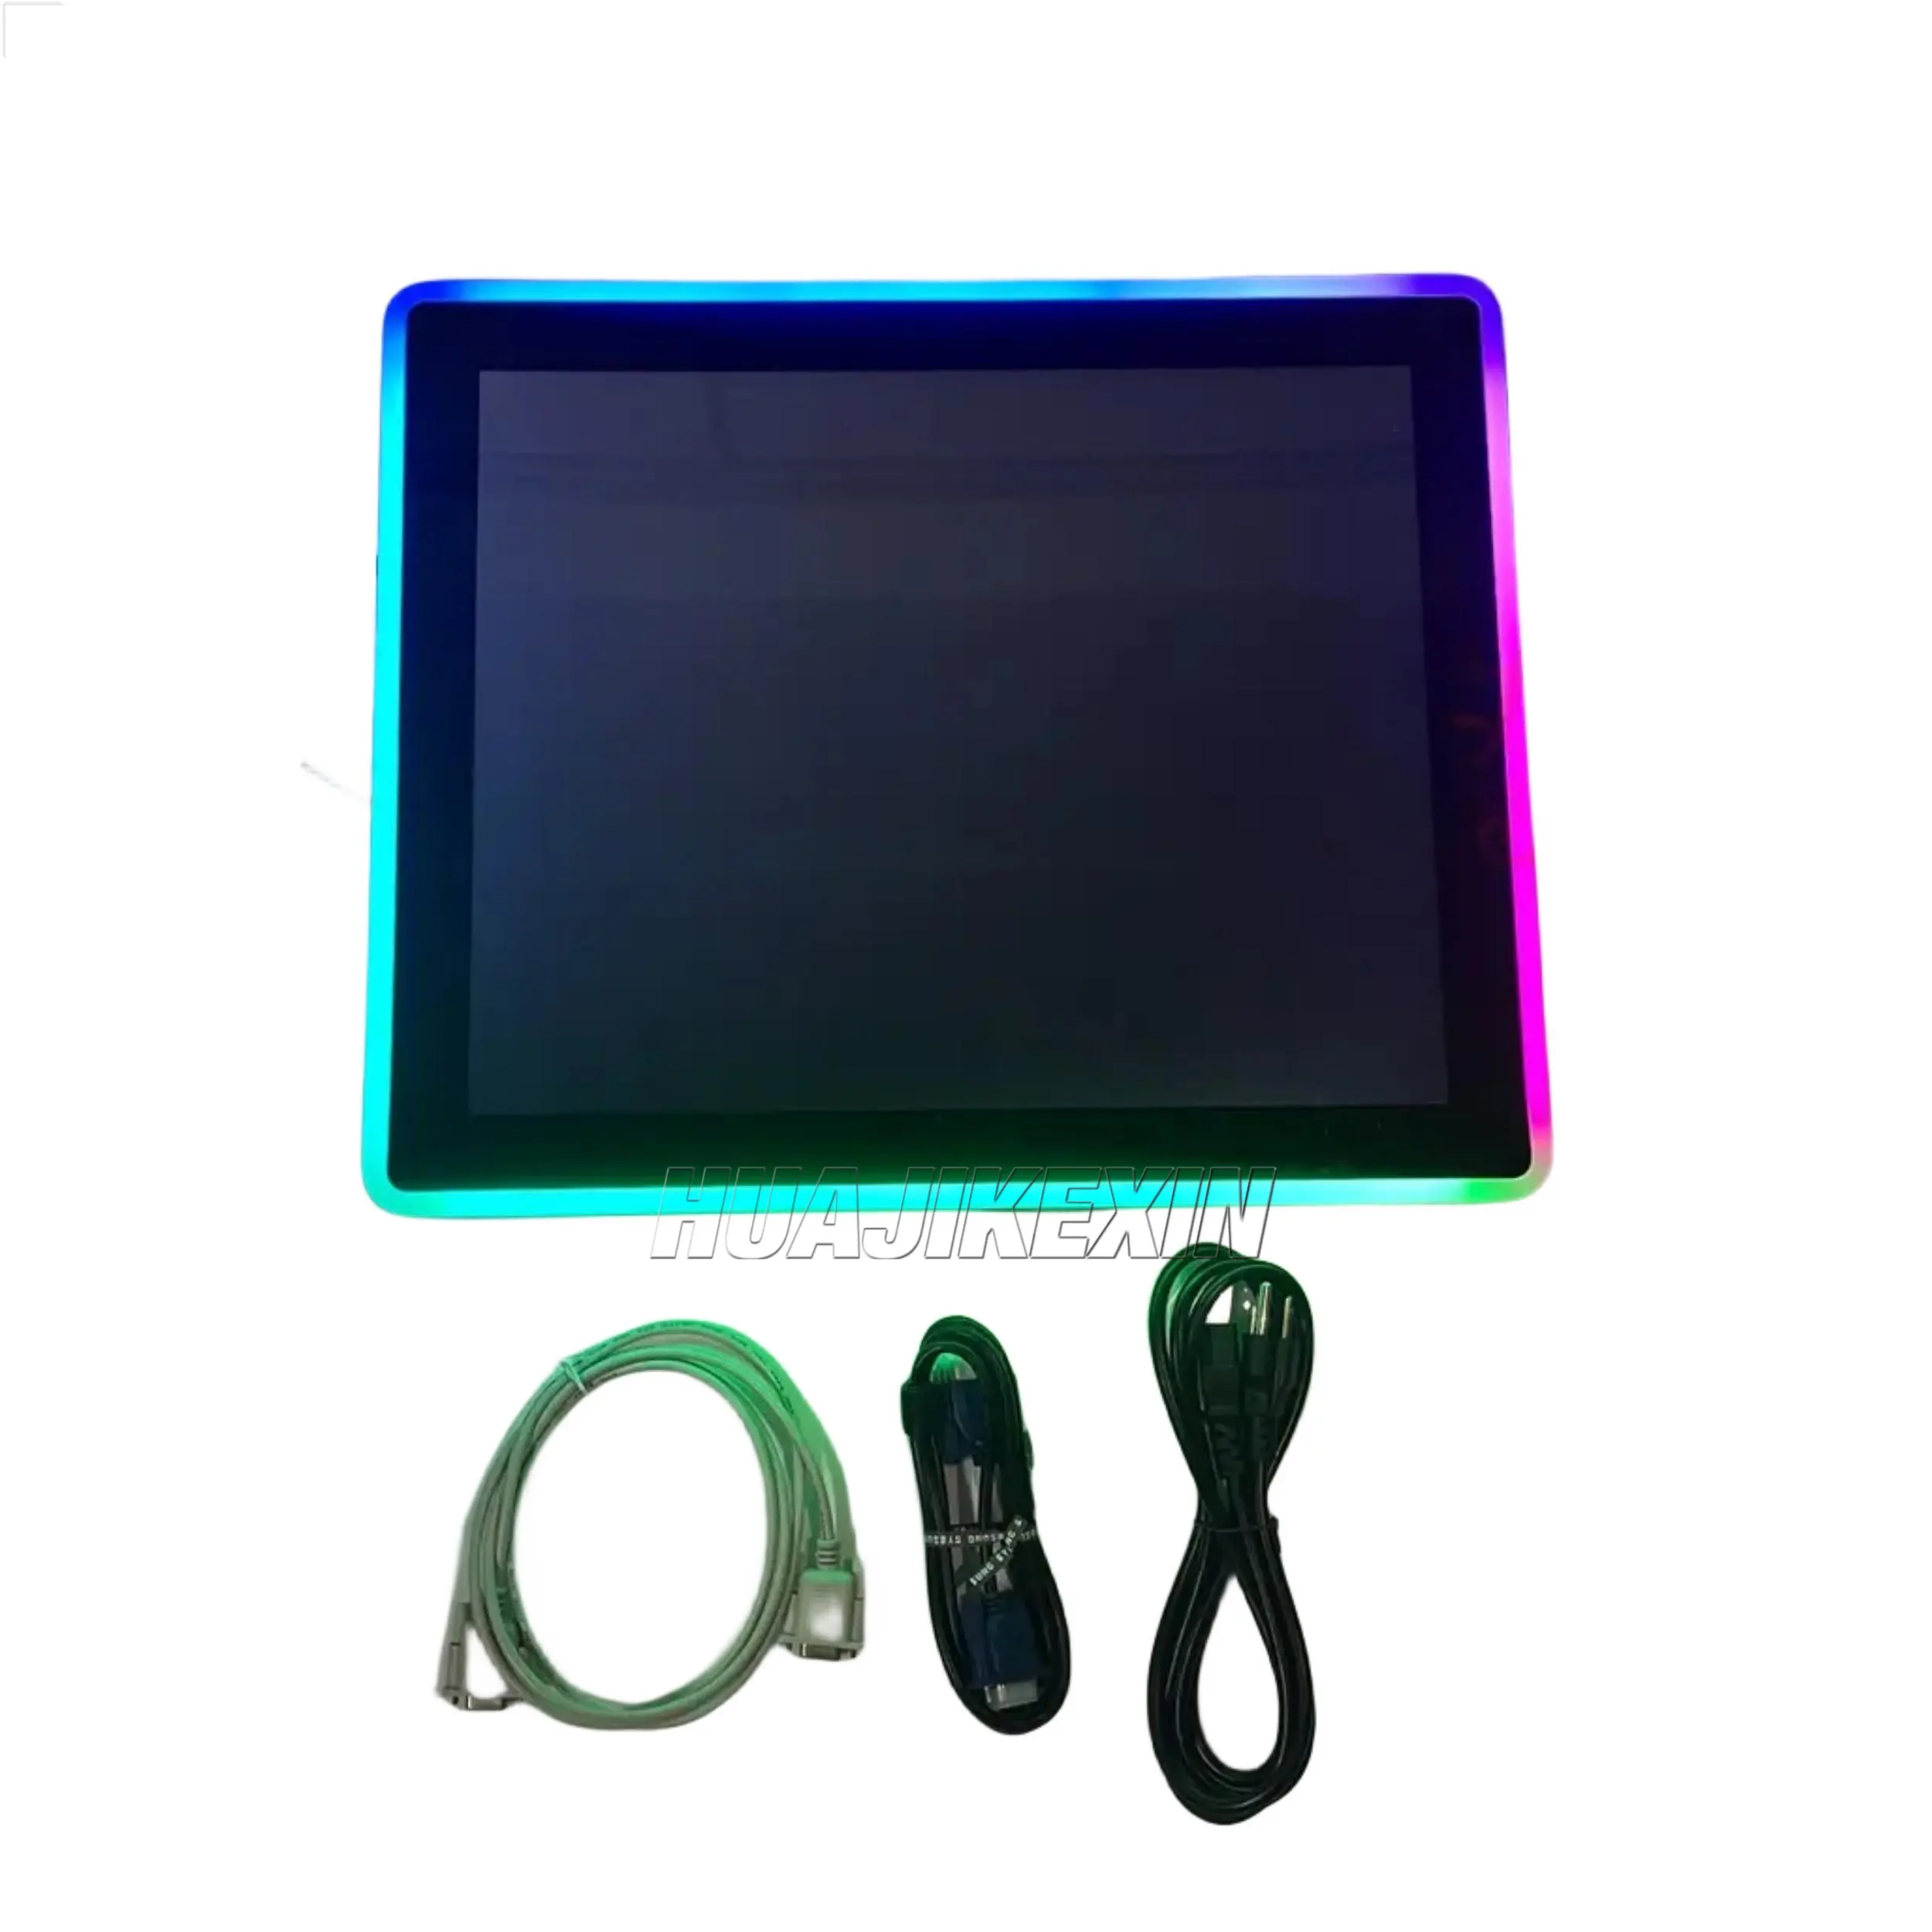 19 inç IR kızılötesi dokunmatik ekran LCD oyun monitör ile renkli Led ışık Pot O altın POG beceri oyun makinesi için